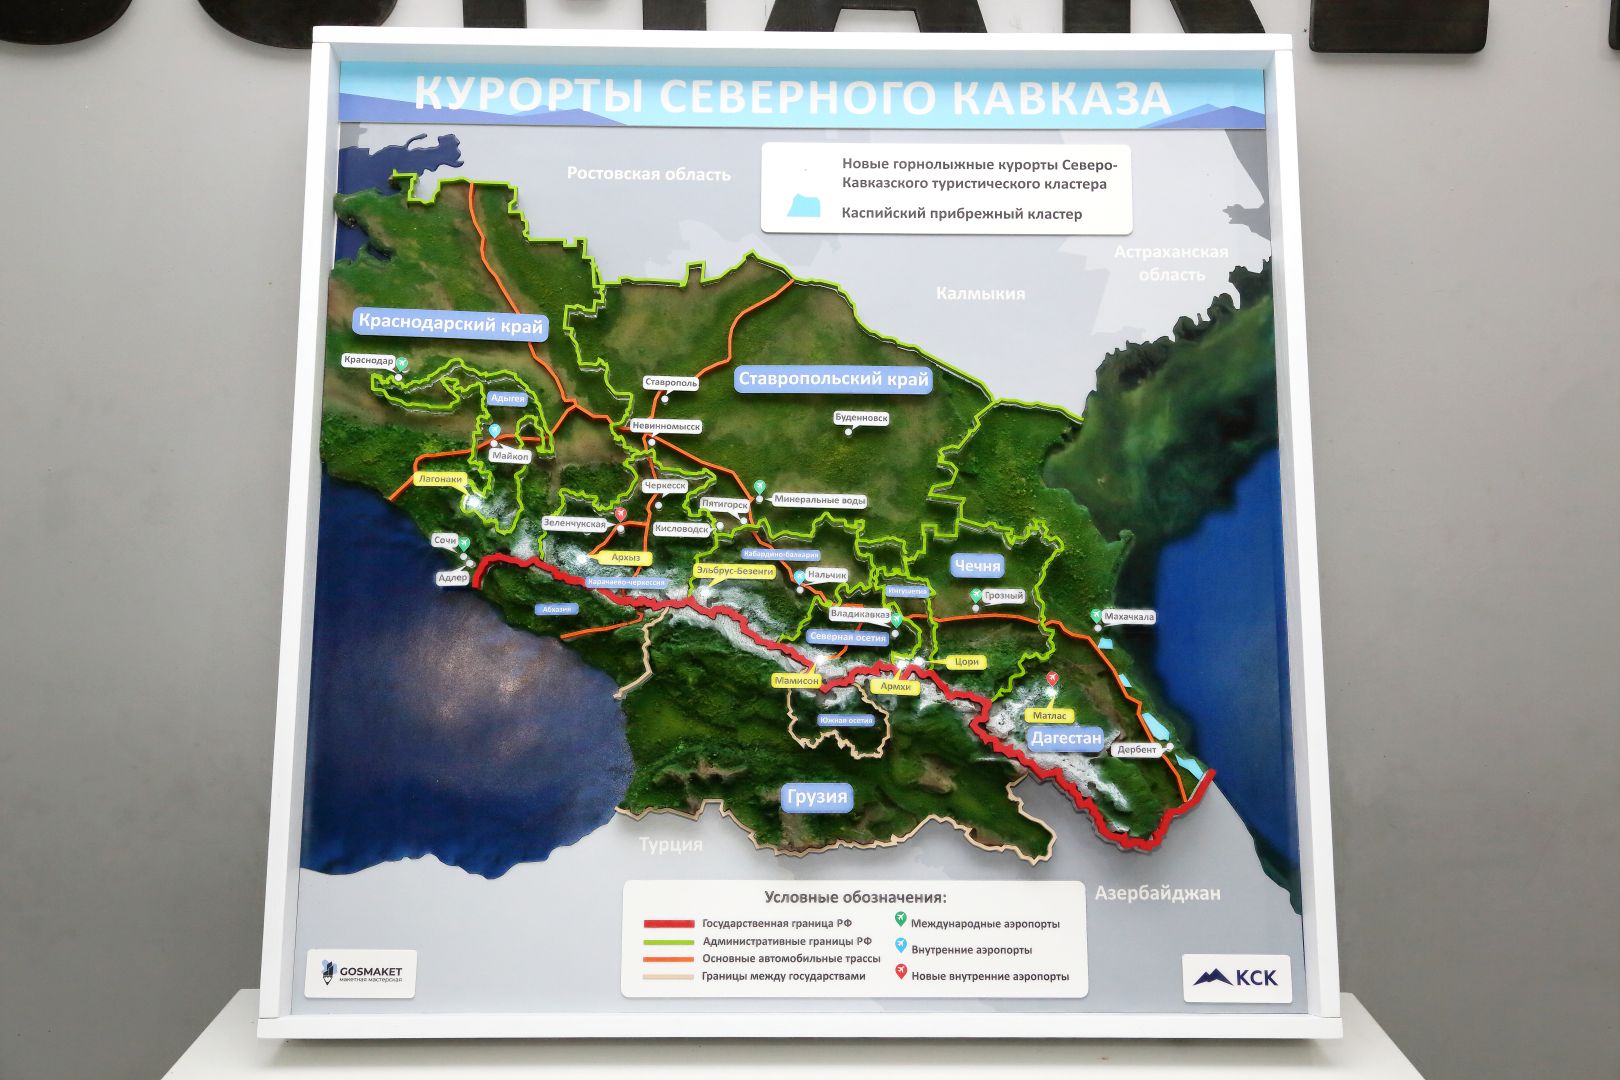 Интерактивный Макет — карта Курортов Кавказа